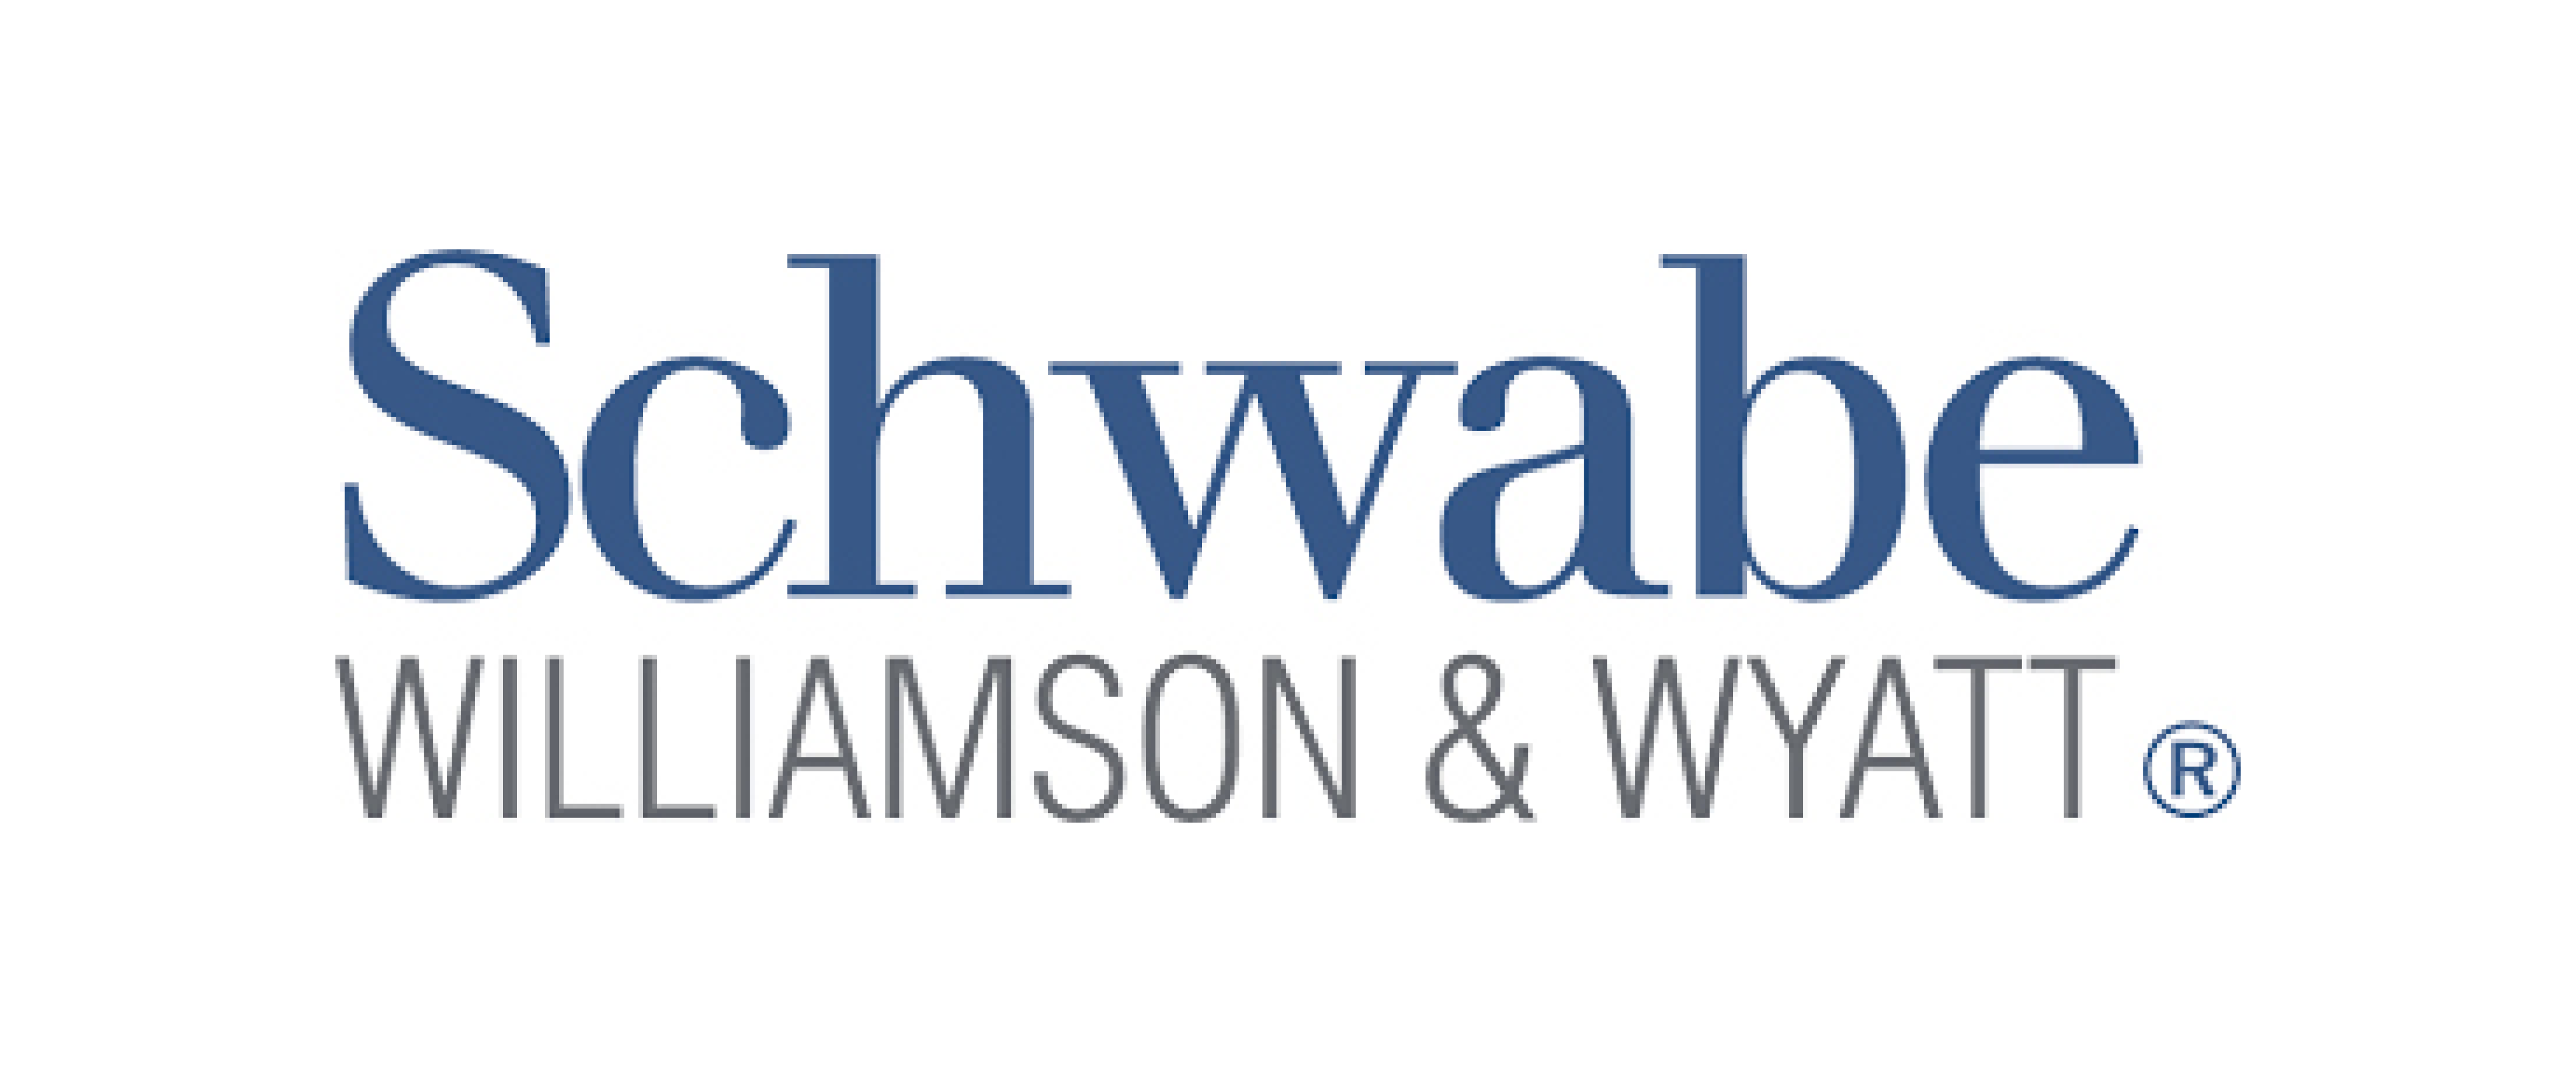 Schwabe Williamson & Wyatt